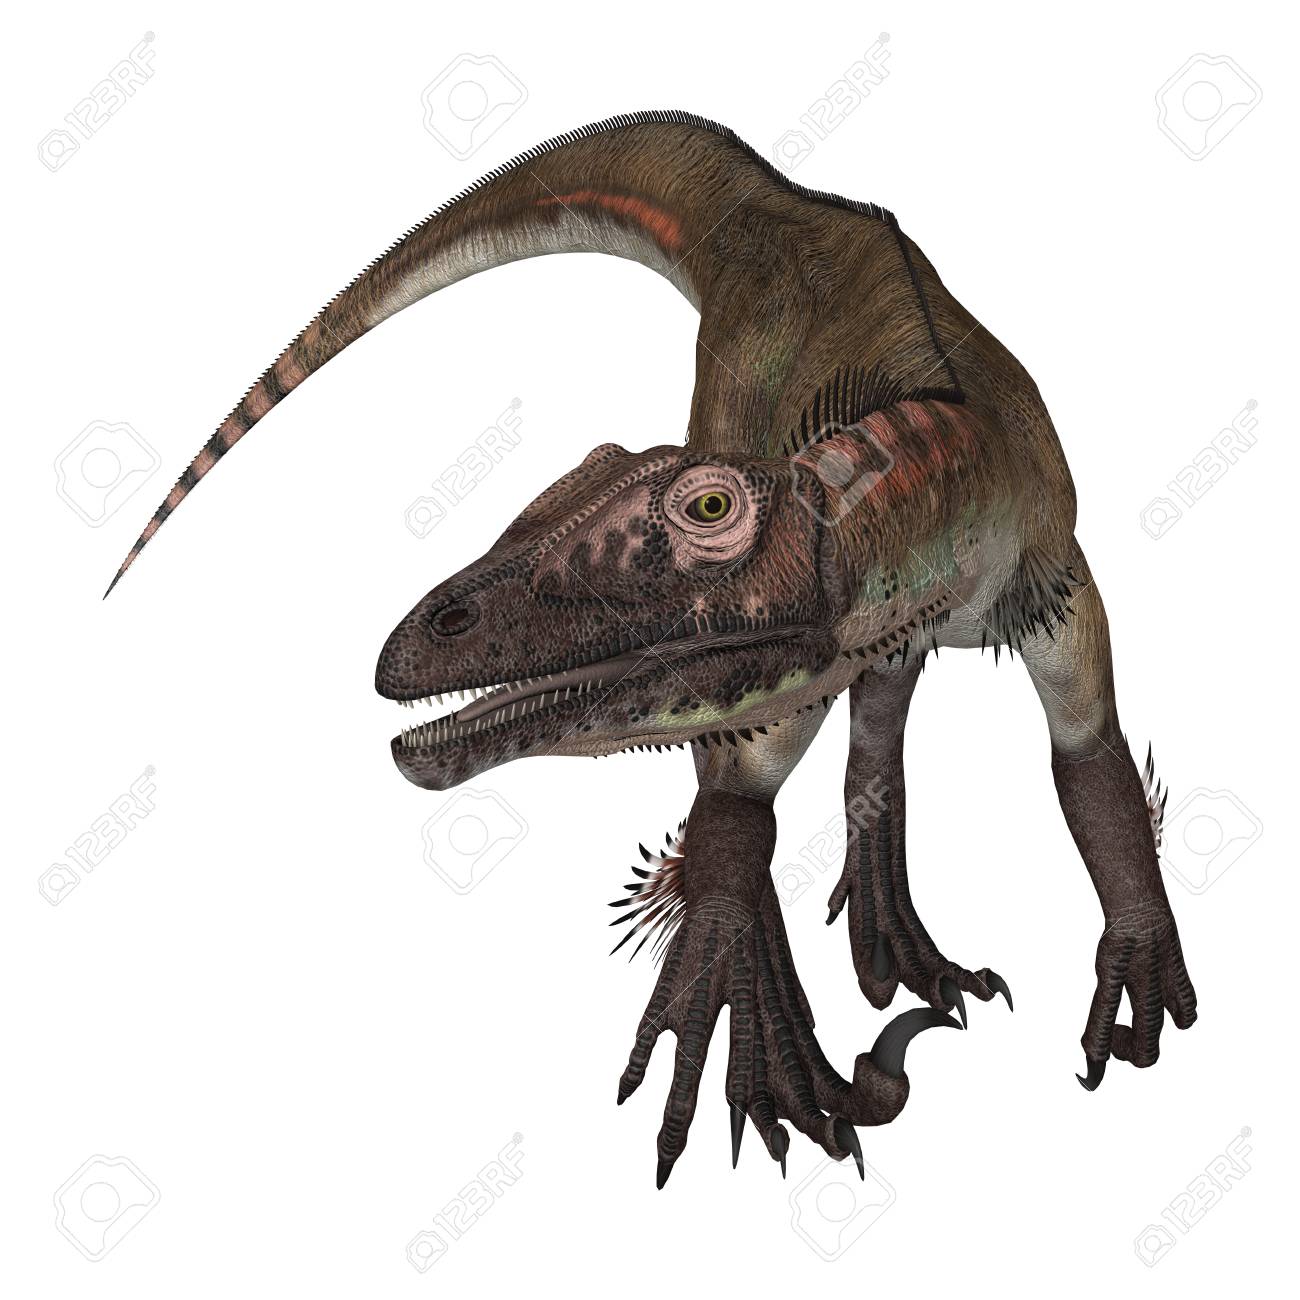 3d Rendering Of A Dinosaur Utahraptor Isolated On White Background